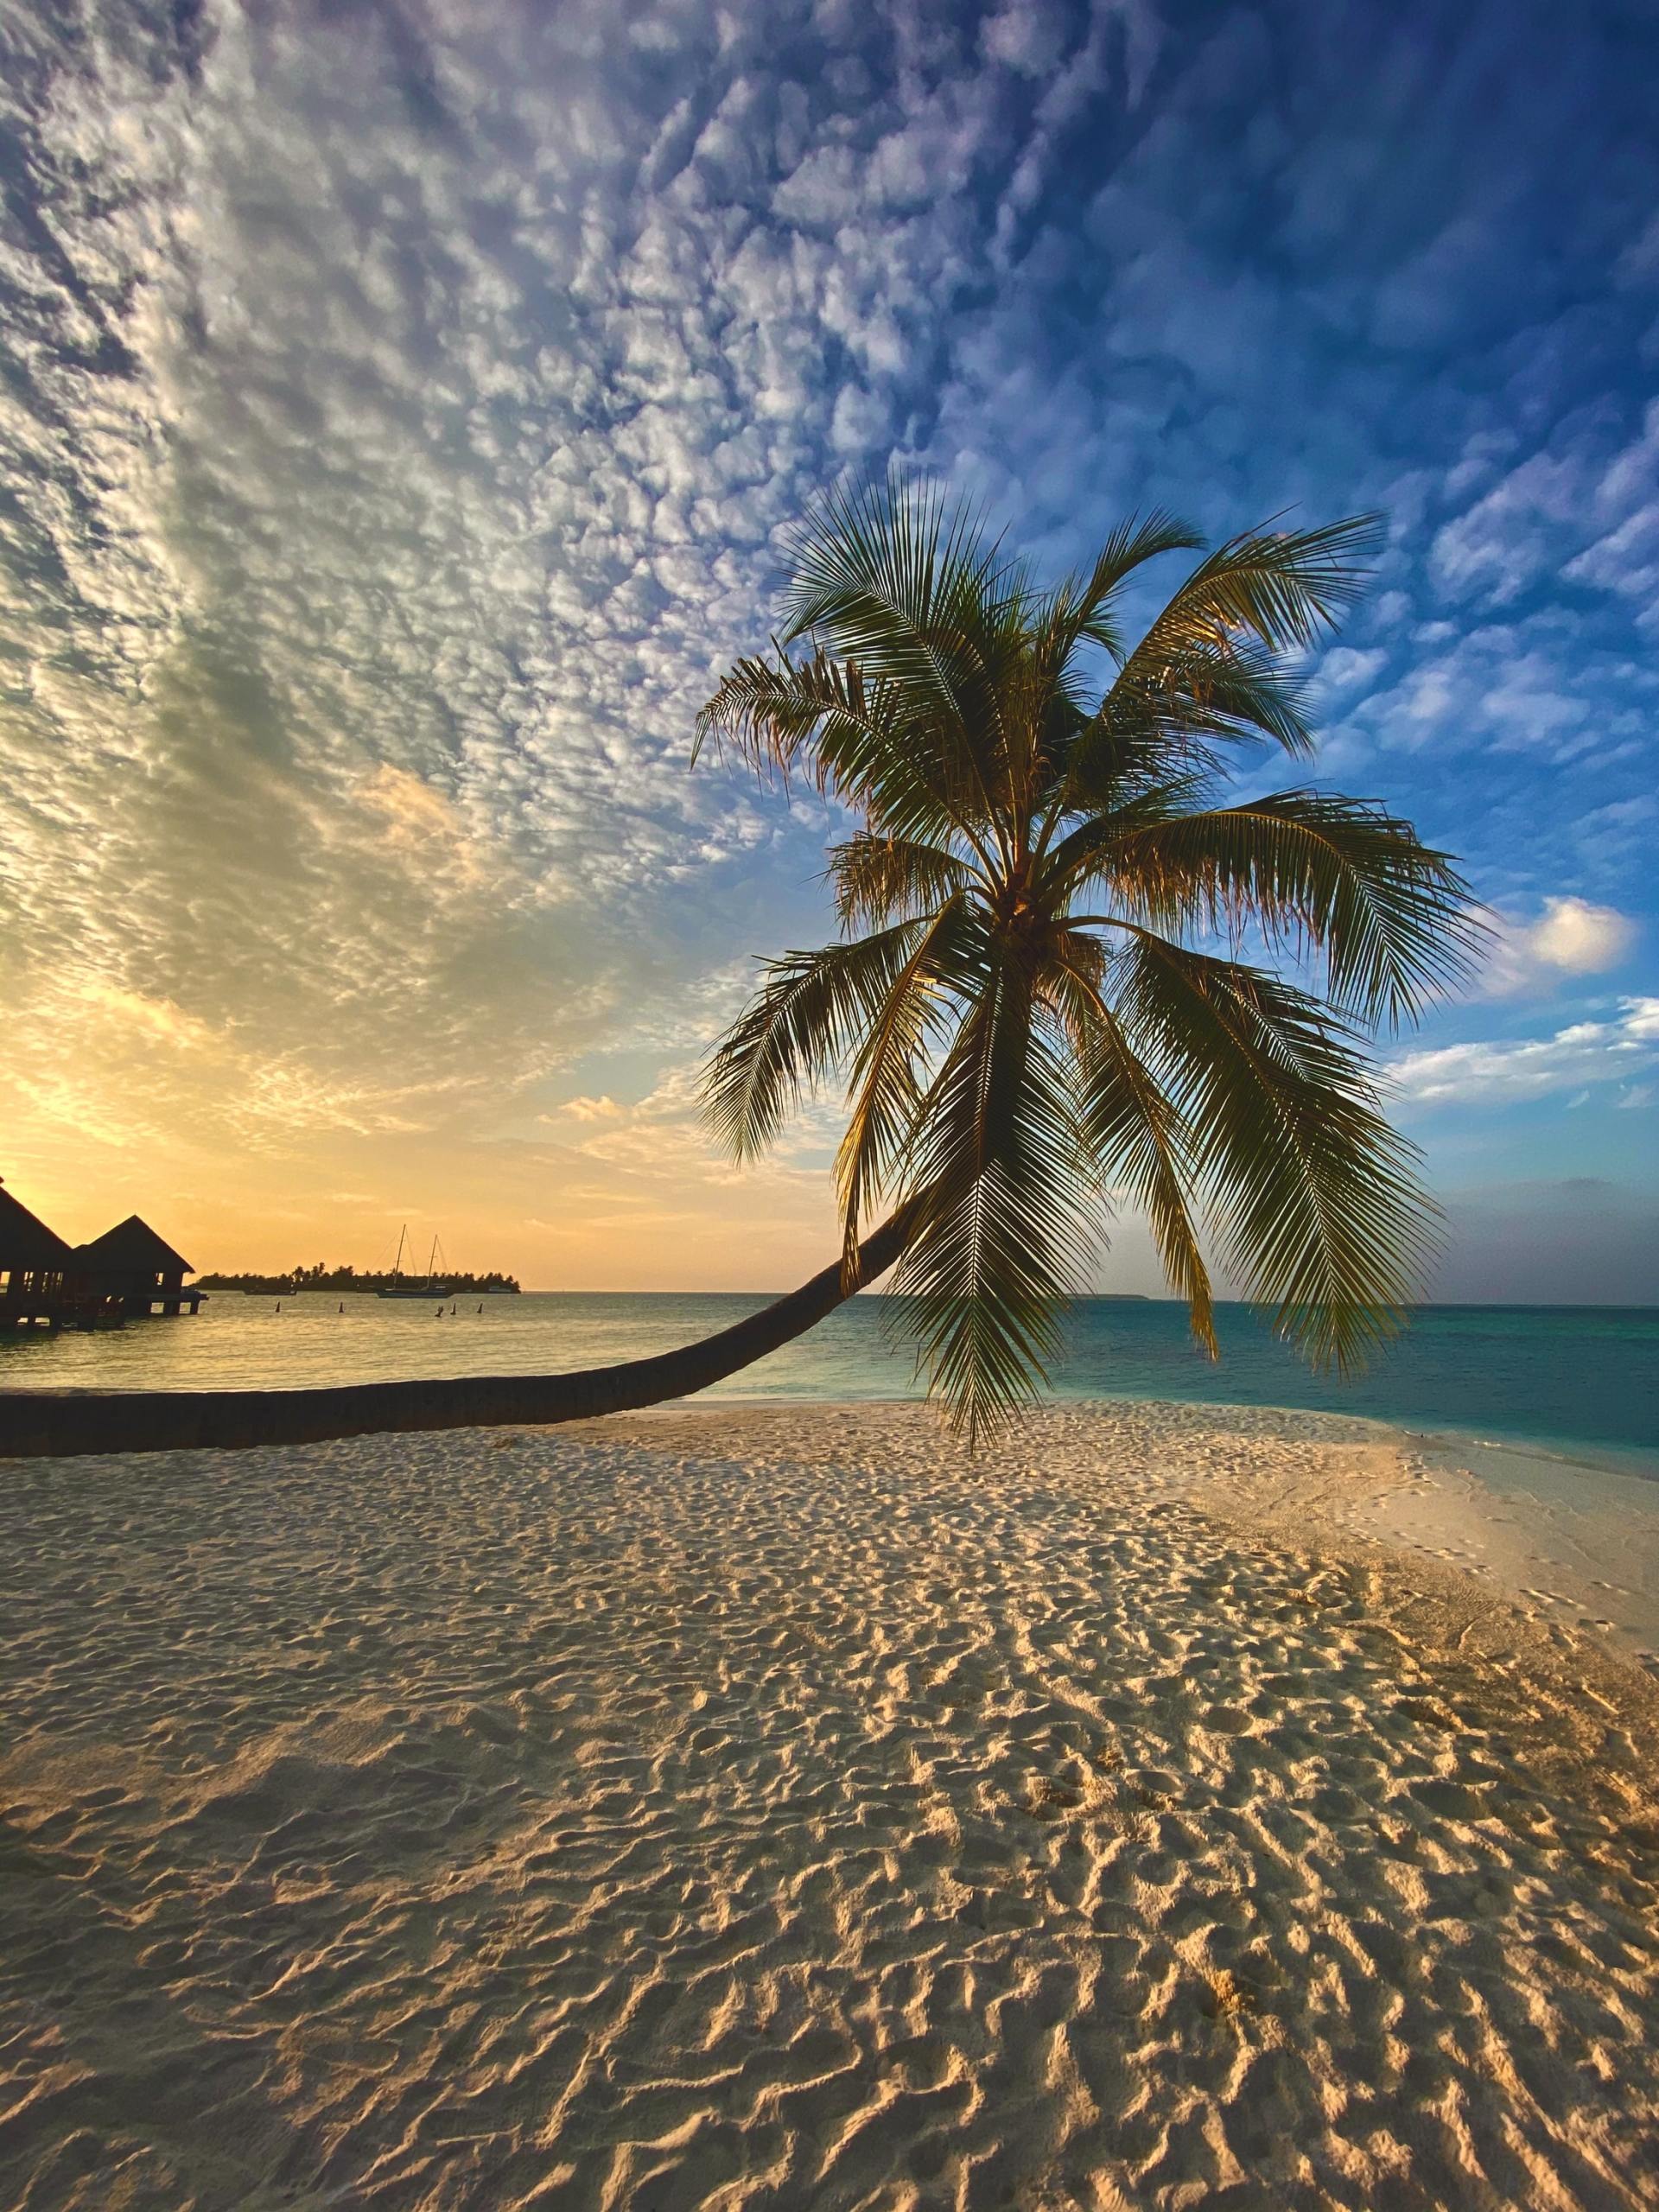 Les Maldives